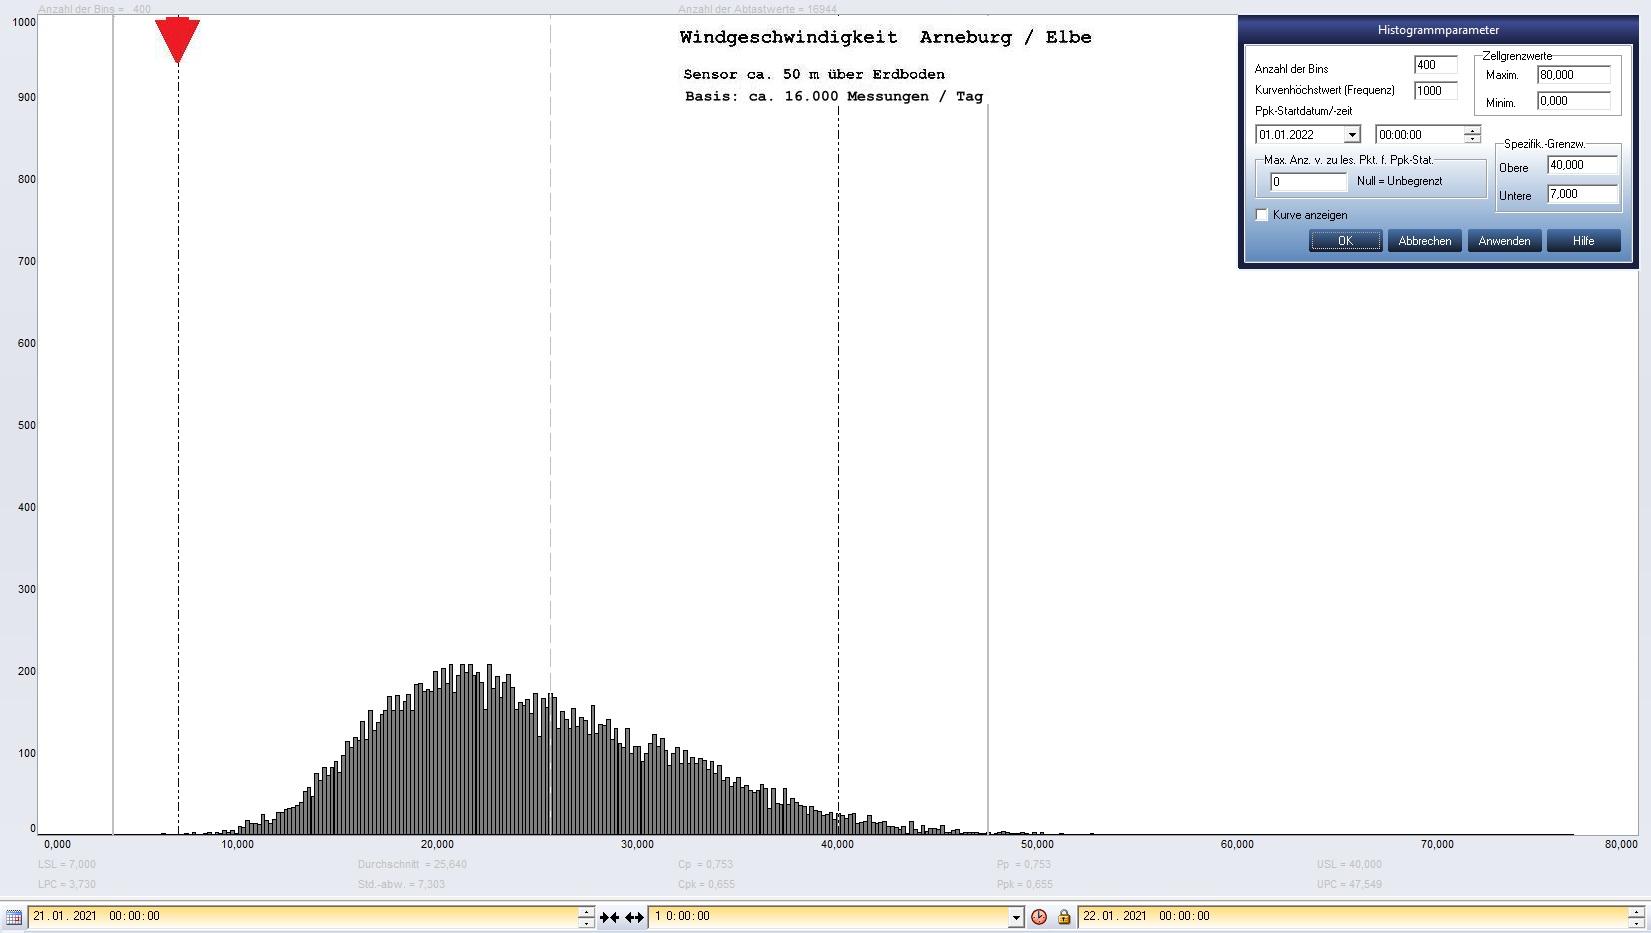 Arneburg Tages-Histogramm Winddaten, 21.01.2021
  Histogramm, Sensor auf Gebude, ca. 50 m ber Erdboden, Basis: 5s-Aufzeichnung